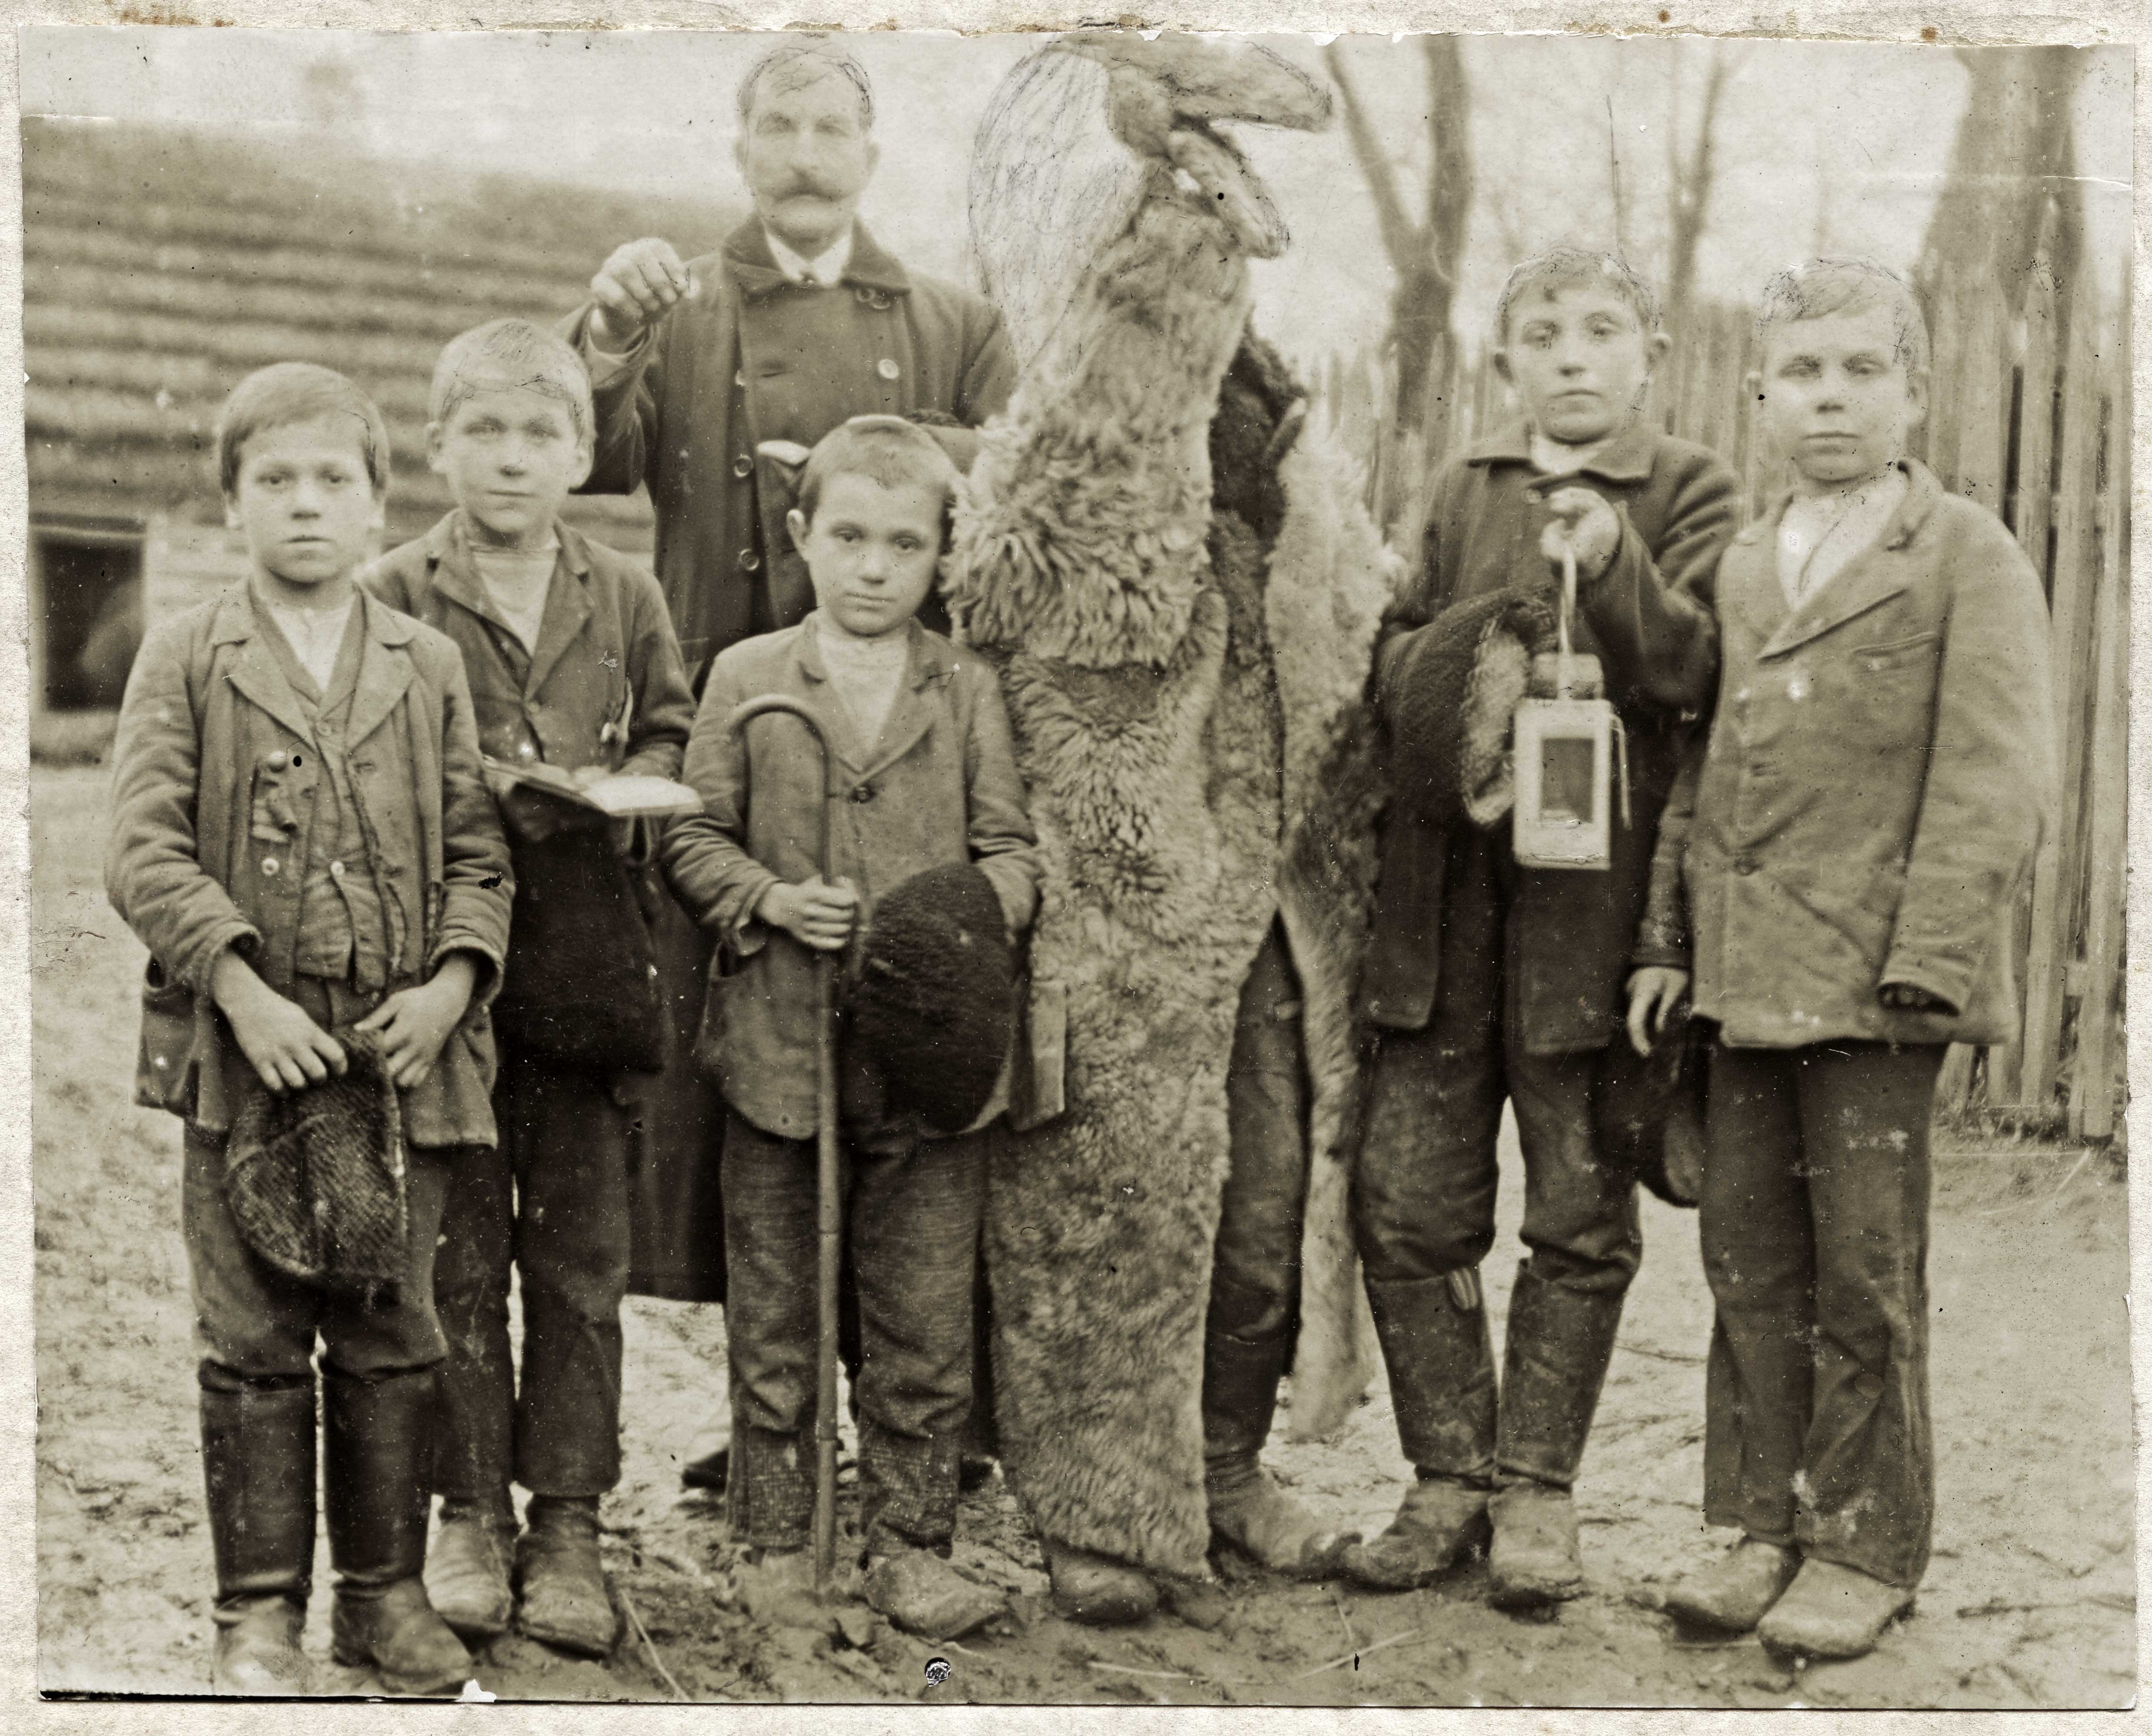 czarnobiałe zdjęcie - grupka chłopców pozuje do zdjęcia, wśród nich postać przebrana za kozę oraz odświętnie ubrany mężczyzna